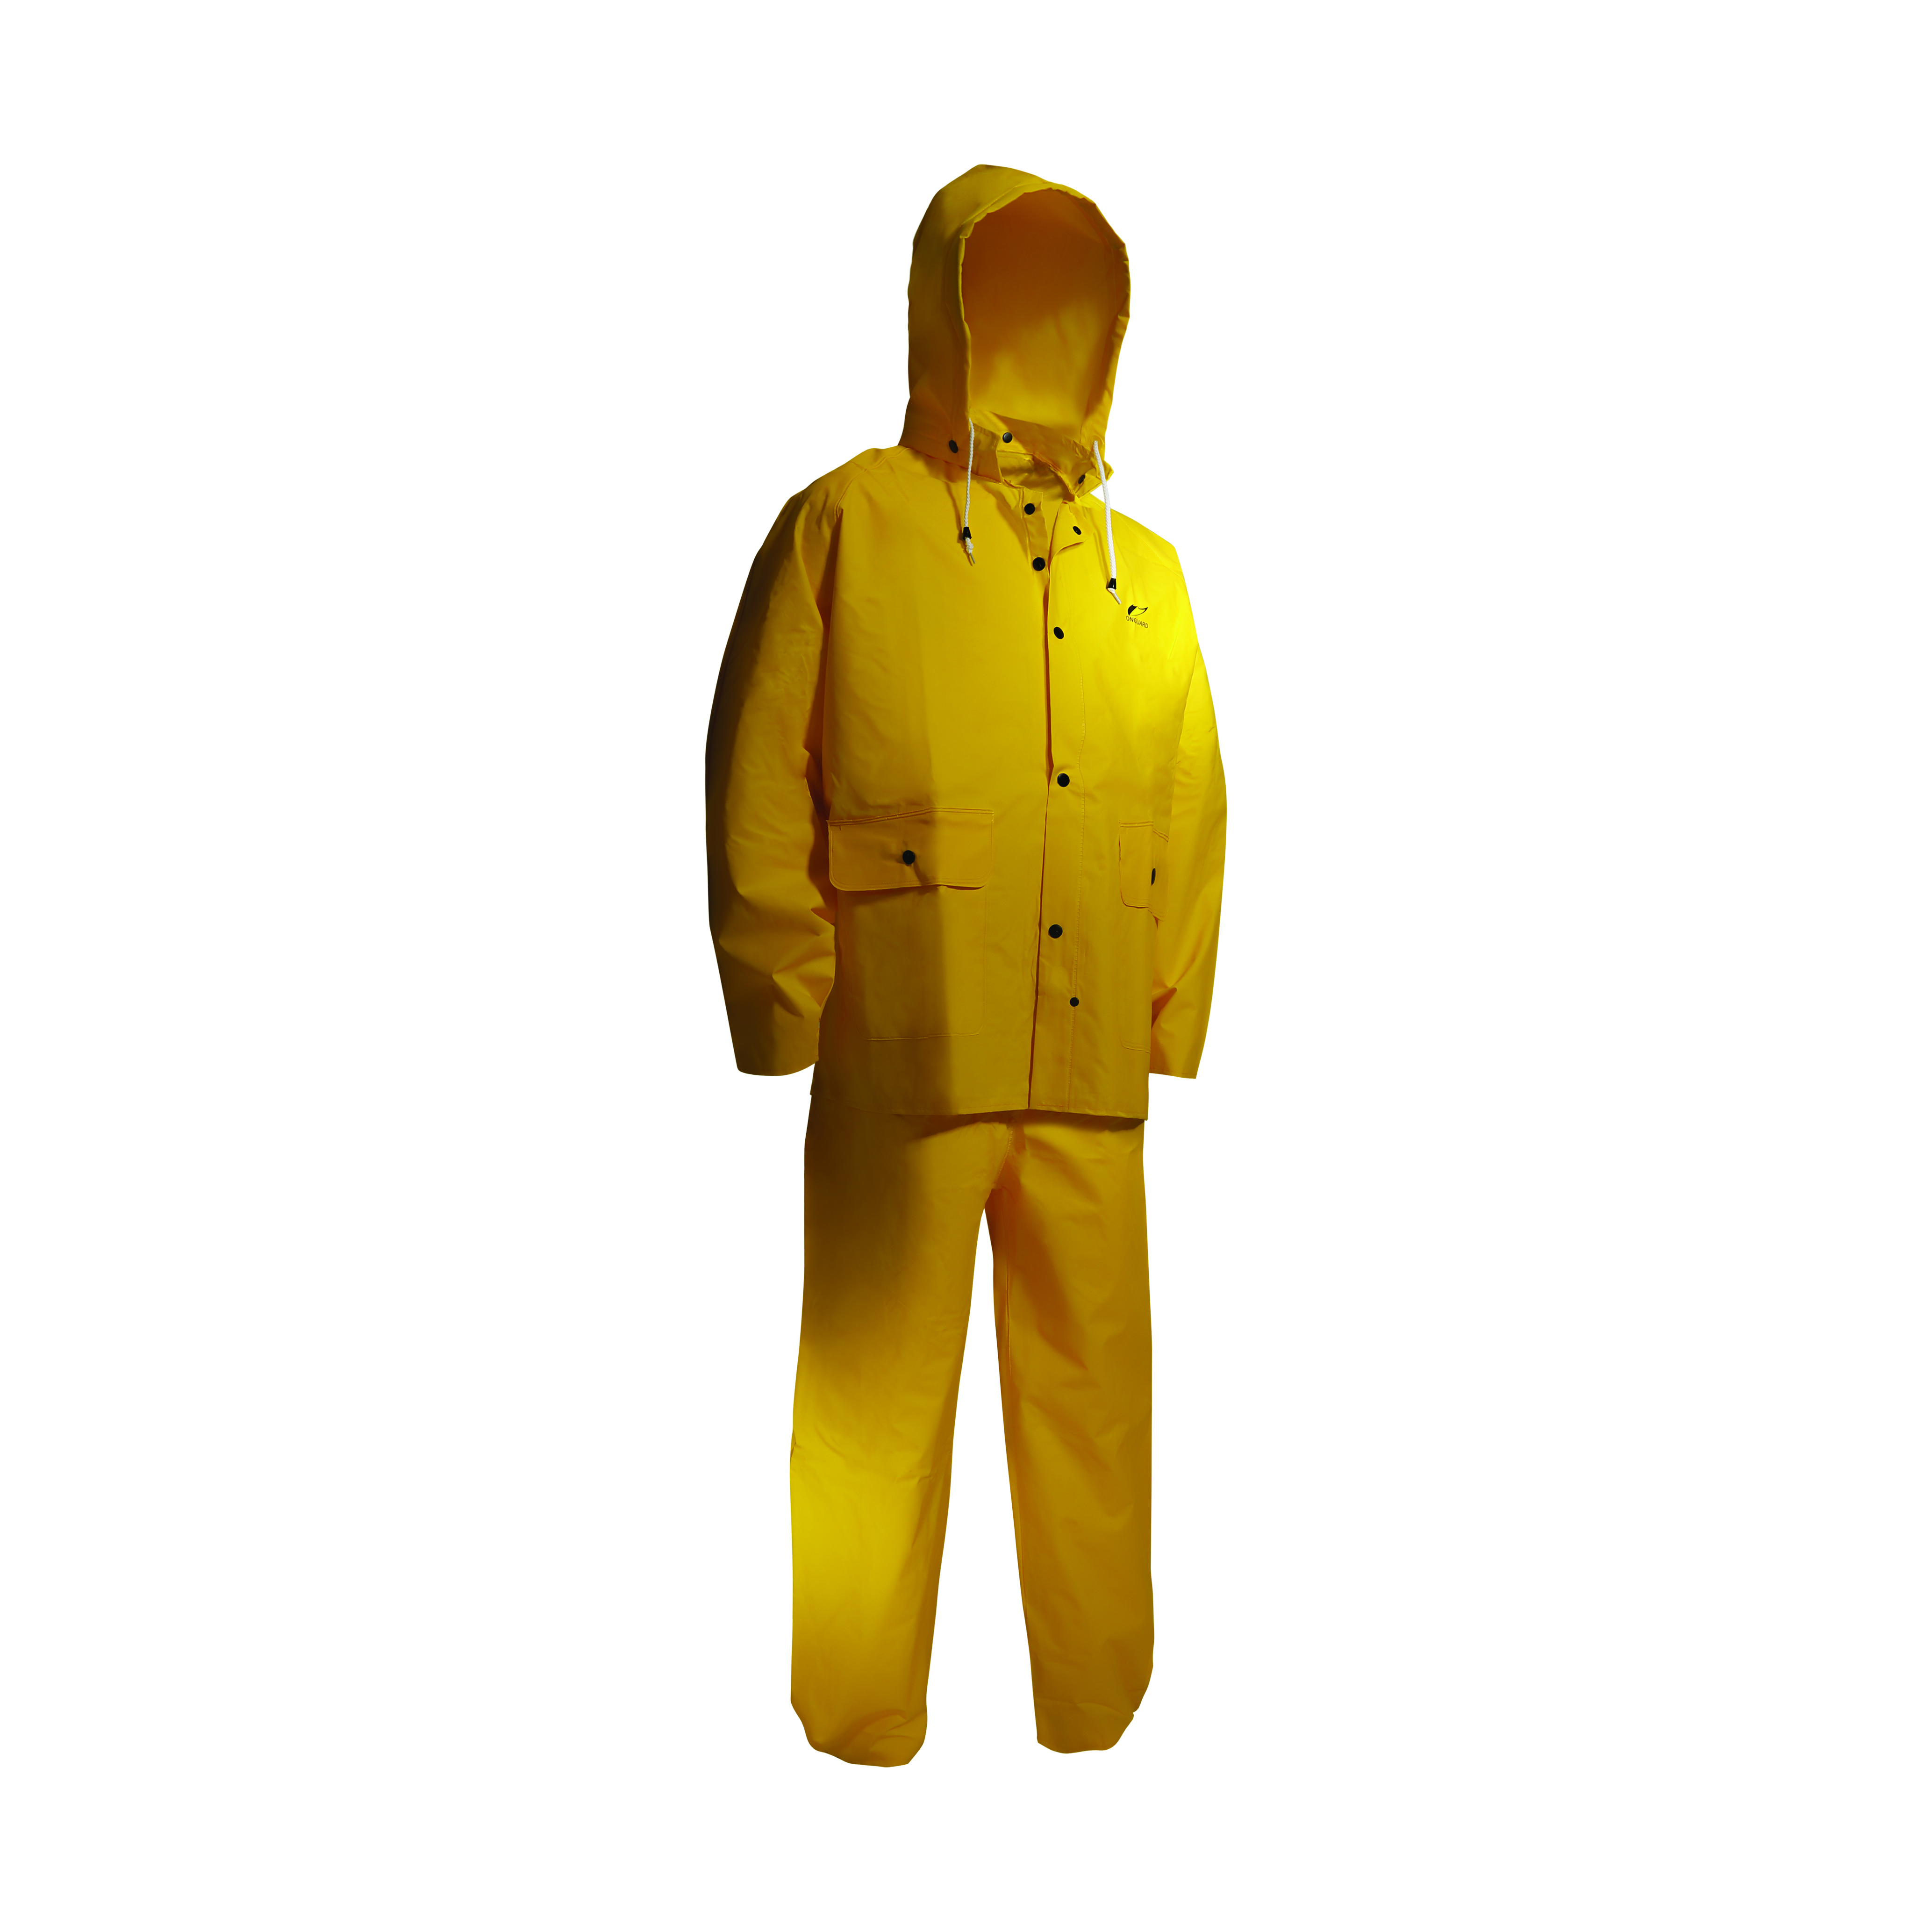 https://www.airgas.com/medias/Product-Images-Cortina-Rainwear-ONGUARD-Tuftex-3-Piece-Suit-300dpi-350x350mm-C-NR-910.jpg?context=bWFzdGVyfHByb2R1Y3R8MzY3Mzk3MnxpbWFnZS9qcGVnfHByb2R1Y3QvaGEwL2g1Mi8xMTU0MzIyNDA5MDY1NC5qcGd8MTIwNDRhZjc1ZmY1ZmFjYTZhMTA5NDQ5MmY3YWQ1NWI2N2VmNWYyOTEyMWQ1ZTllZTVkM2EwNjAxMjMxYzNjZQ